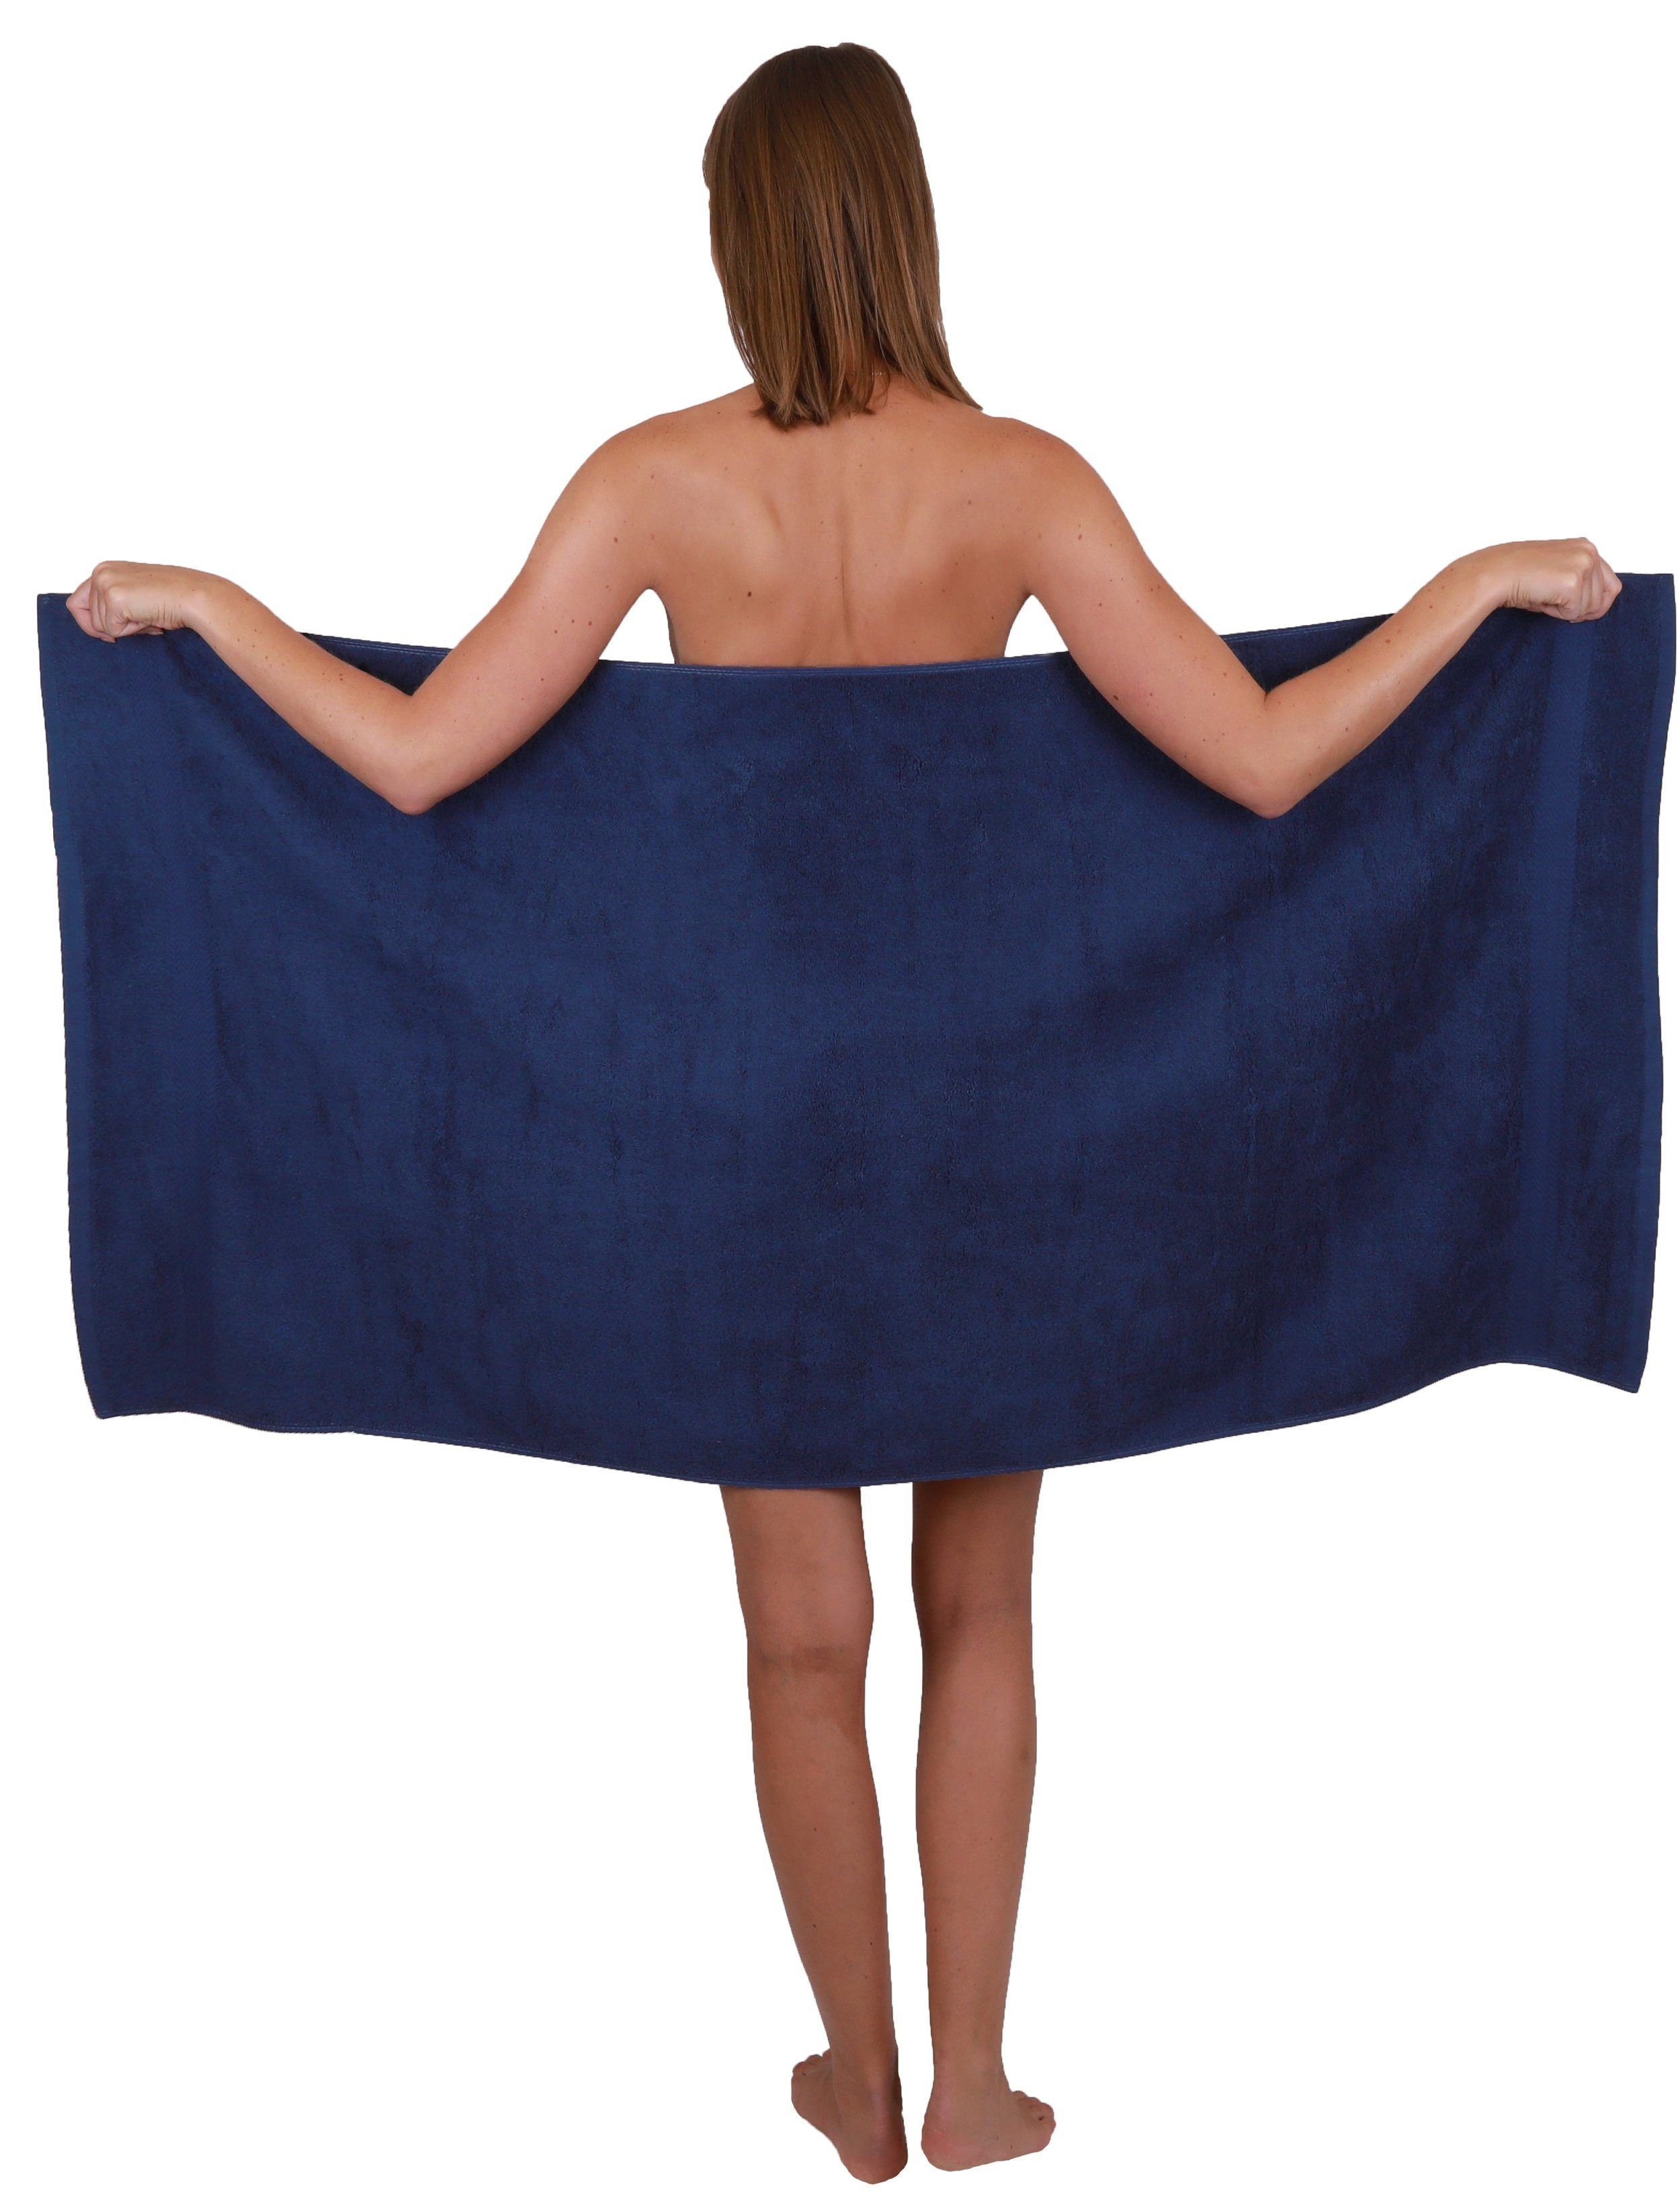 Handtuch-Set Farbe 10-TLG. 100% Classic Set Handtuch und Betz smaragdgrün Baumwolle dunkelblau,